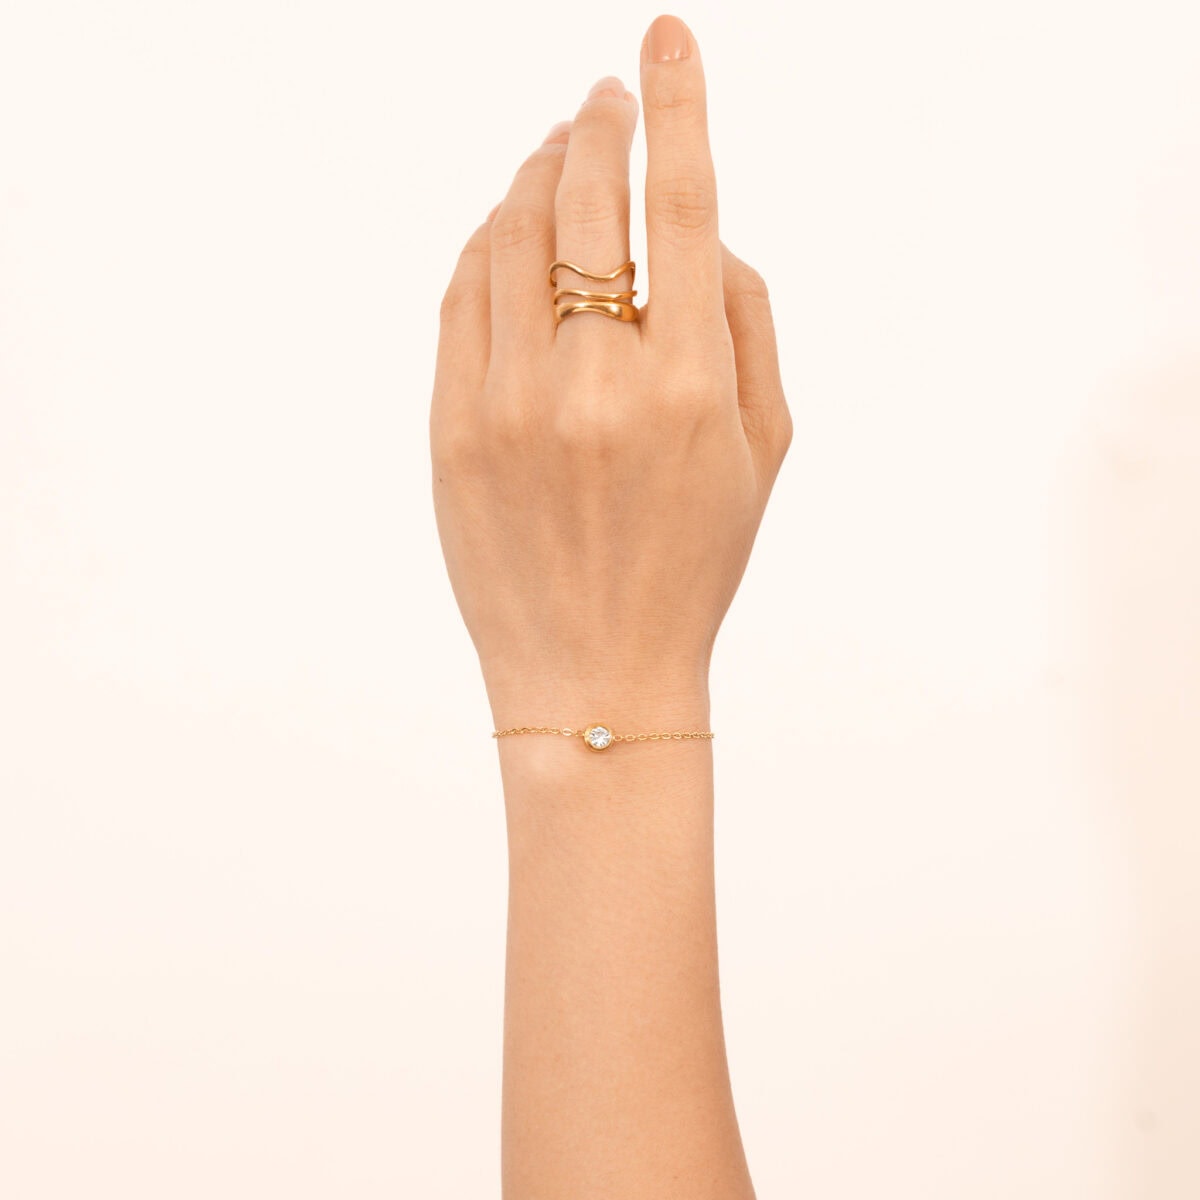 https://m.clubbella.co/product/joy-solitaire-bracelet/ Joy Solitaire Bracelet (6)